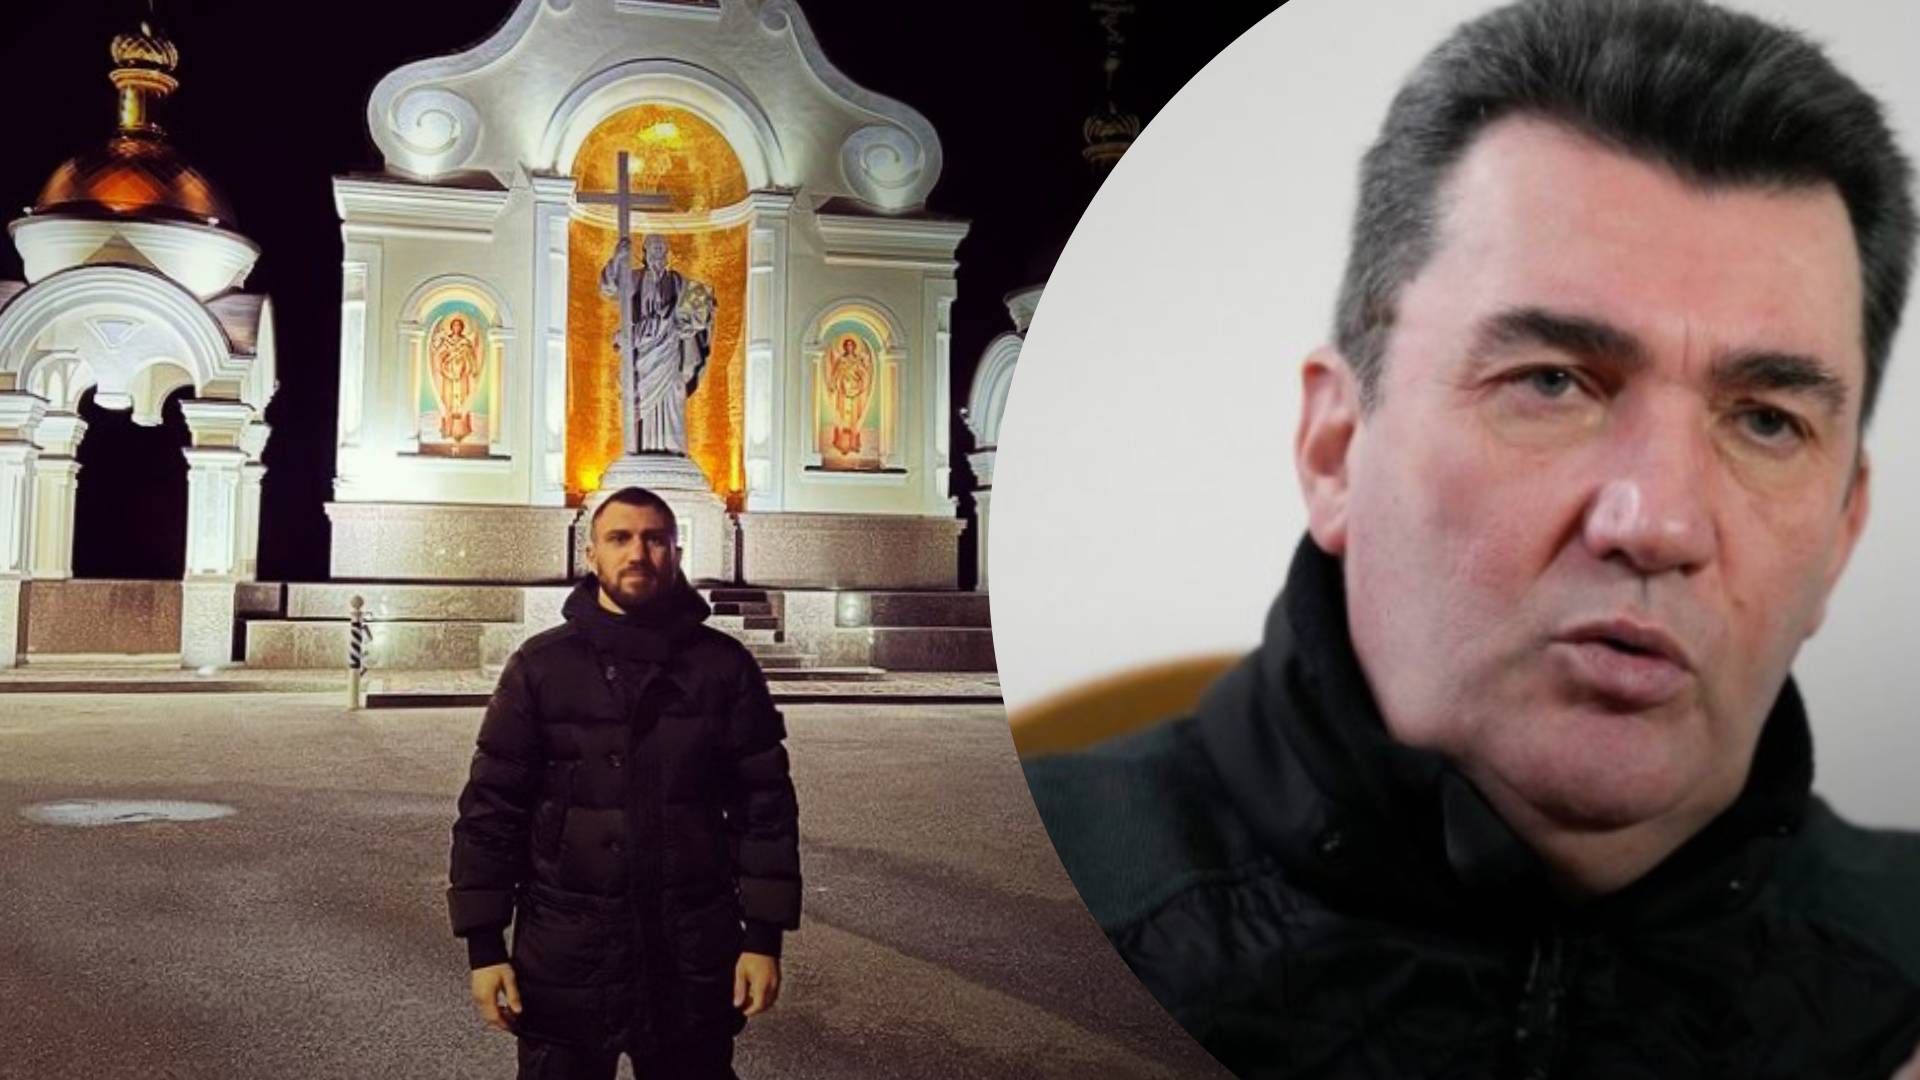 Данилов прокомментировал скандал с Ломаченко - чем грозит Ломаченко скандал с видео